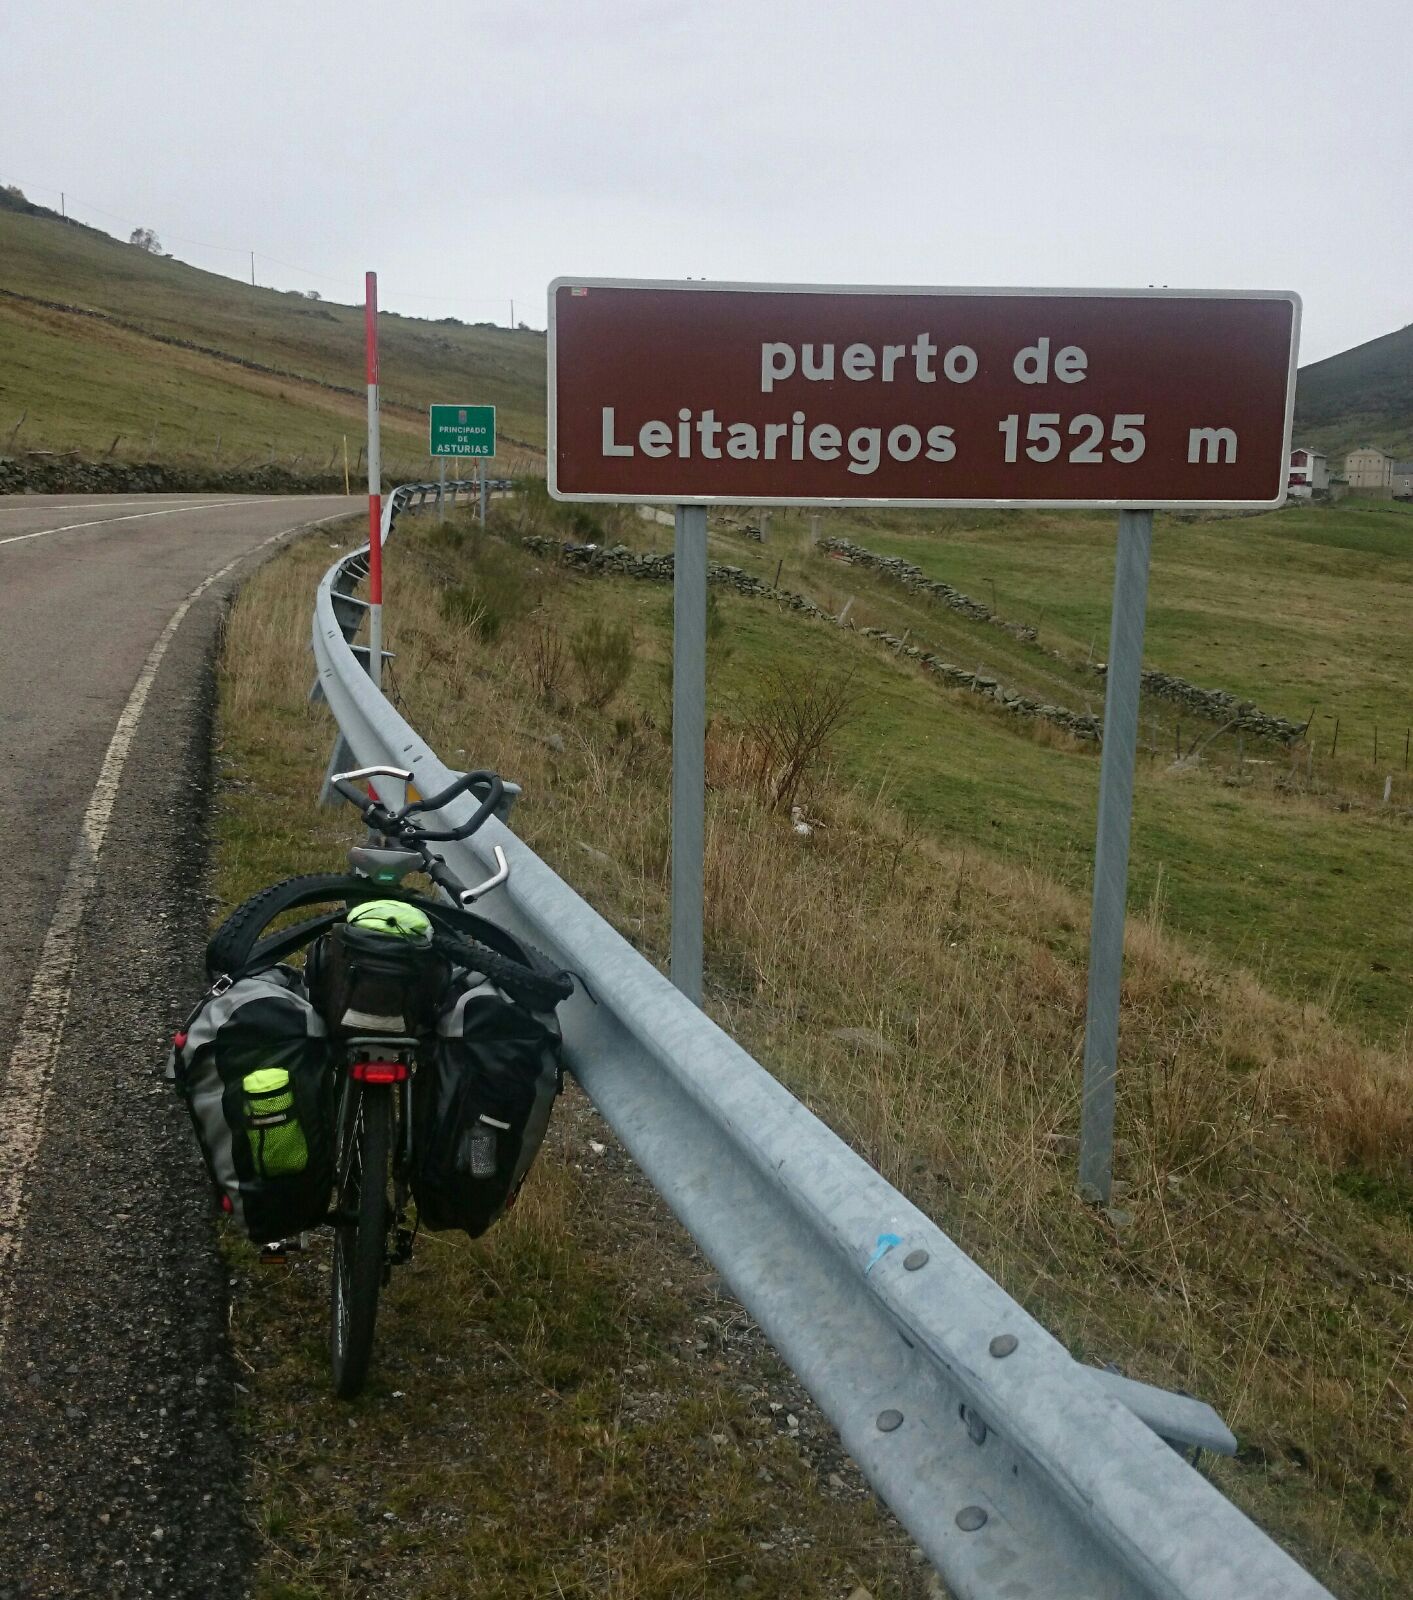 Desde aqui bajada a Leitarriegos por Asturias IMPRESIONANTE